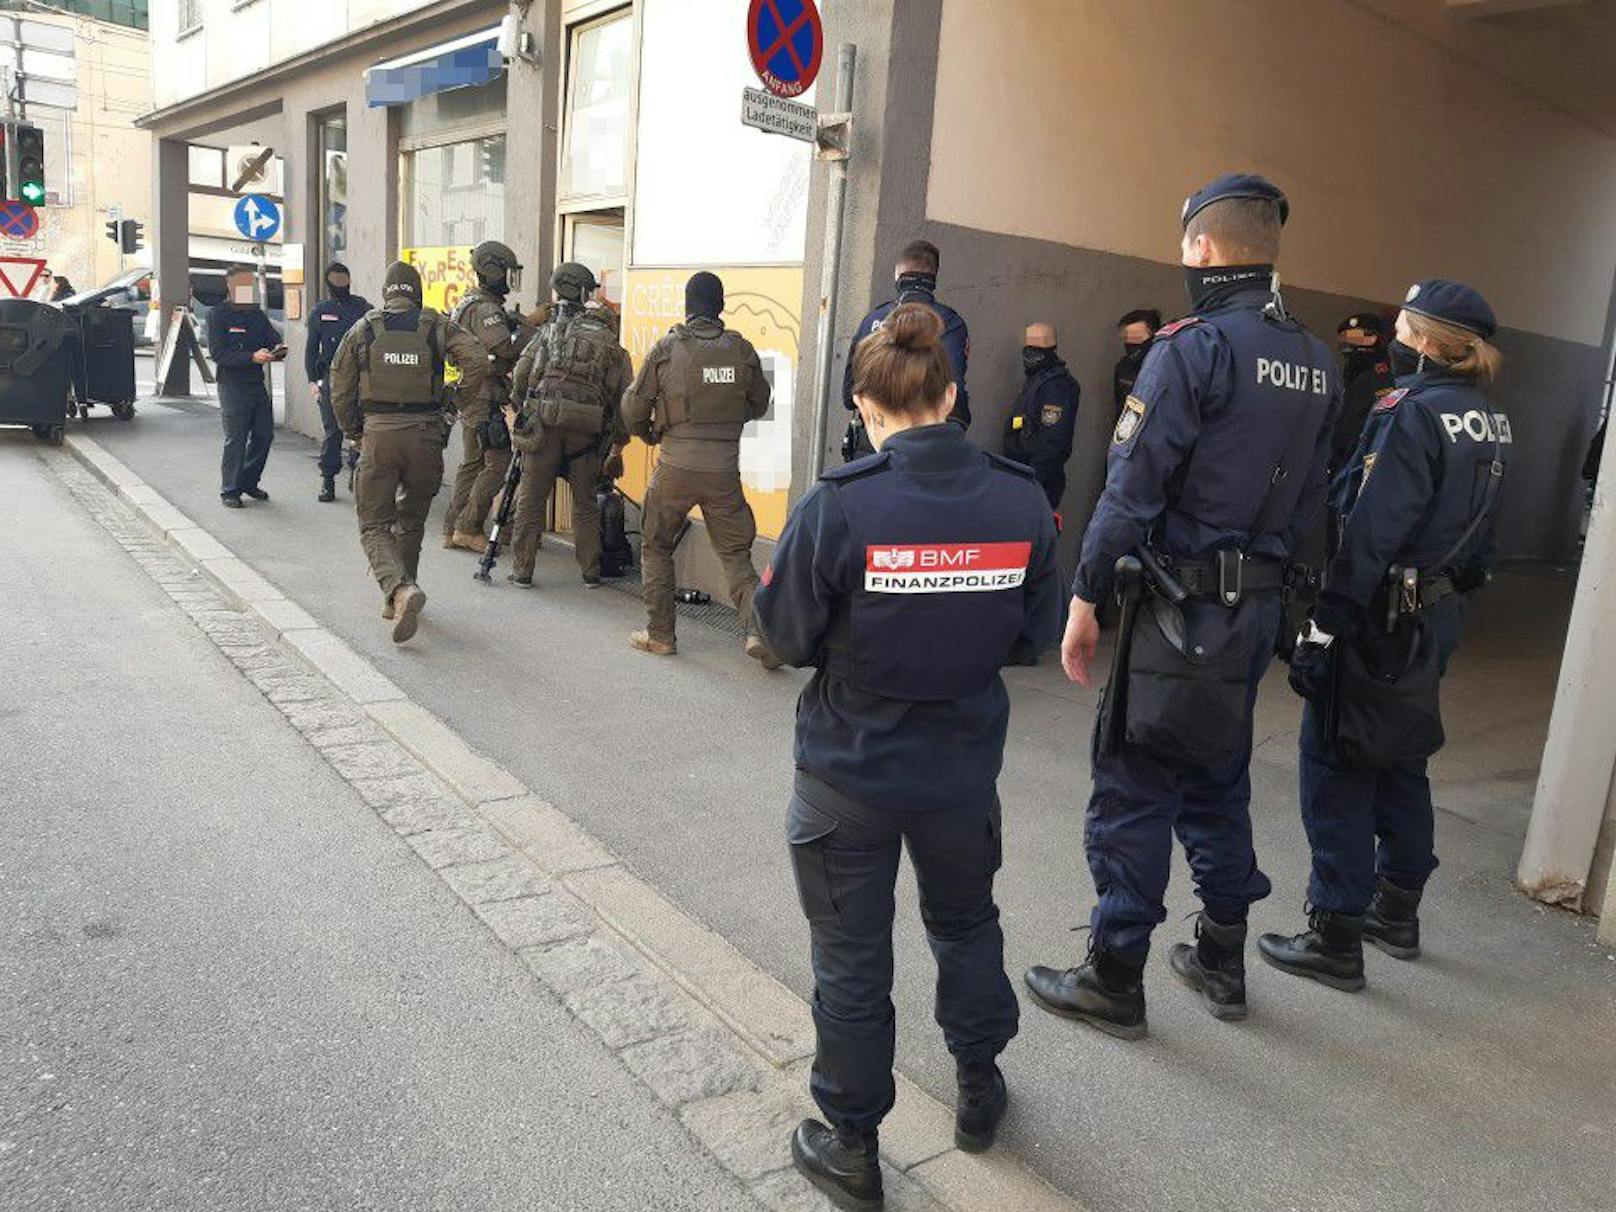 Die Finanzpolizei im Amt für Betrugsbekämpfung führte zwischen 9. März und 7. April schwerpunktmäßige Kontrollen im Kampf gegen illegales Glücksspiel in der Stadt Salzburg durch. In Zusammenarbeit mit der Polizei wurden an fünf Kontrolltagen in zehn Lokalen insgesamt 72 Automaten beschlagnahmt.